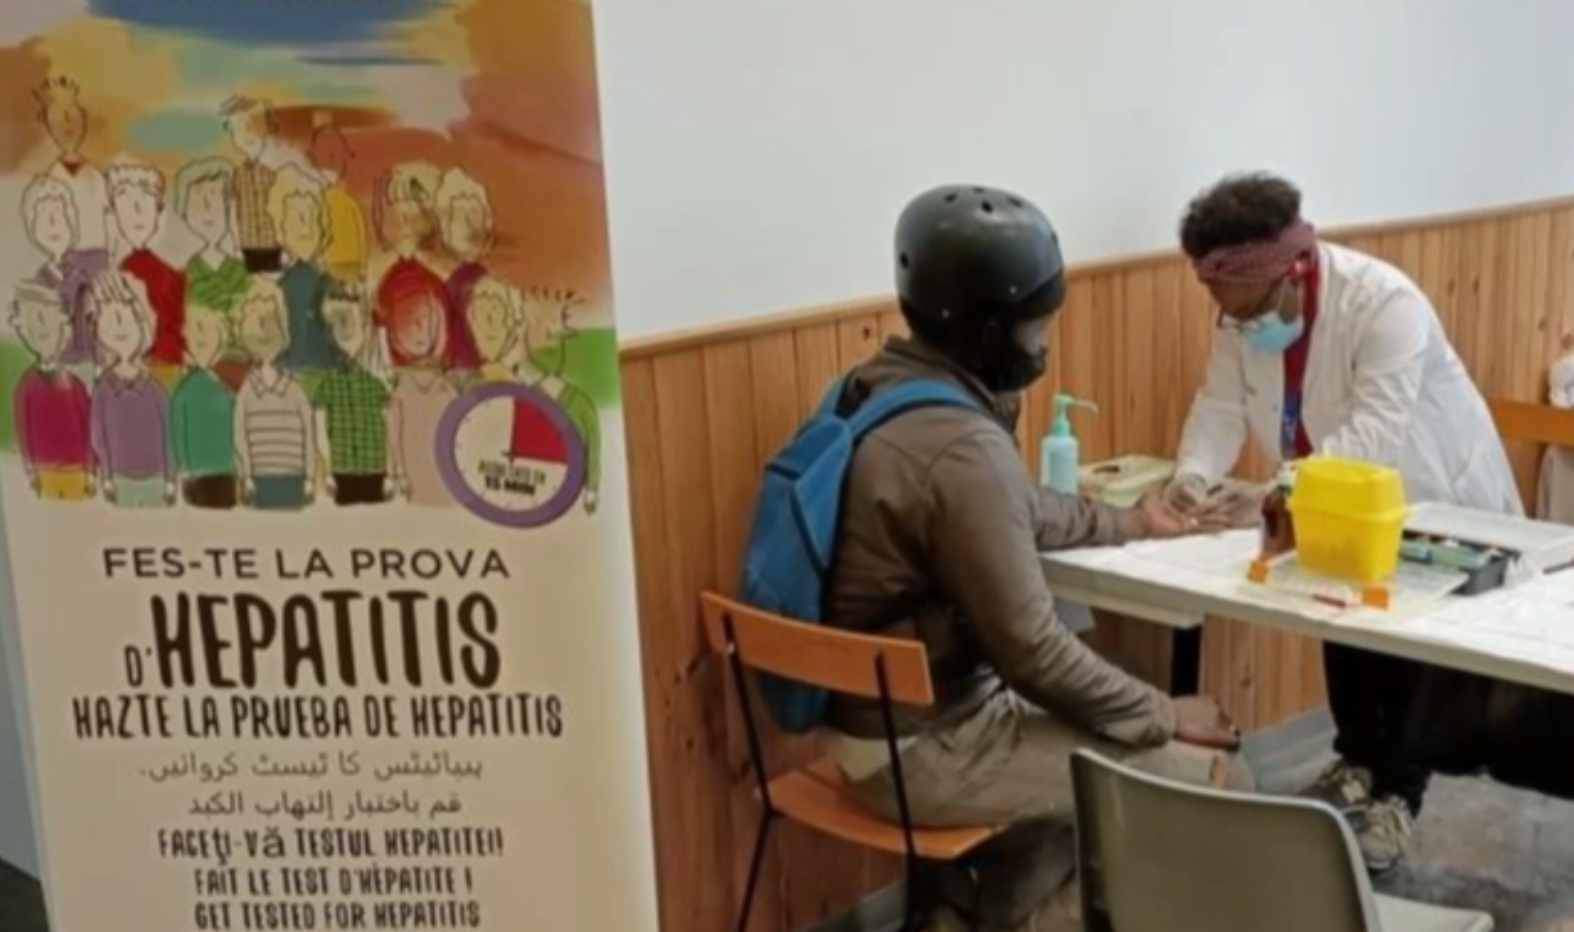 Nuevo impulso en la lucha contra la hepatitis C en Cataluña